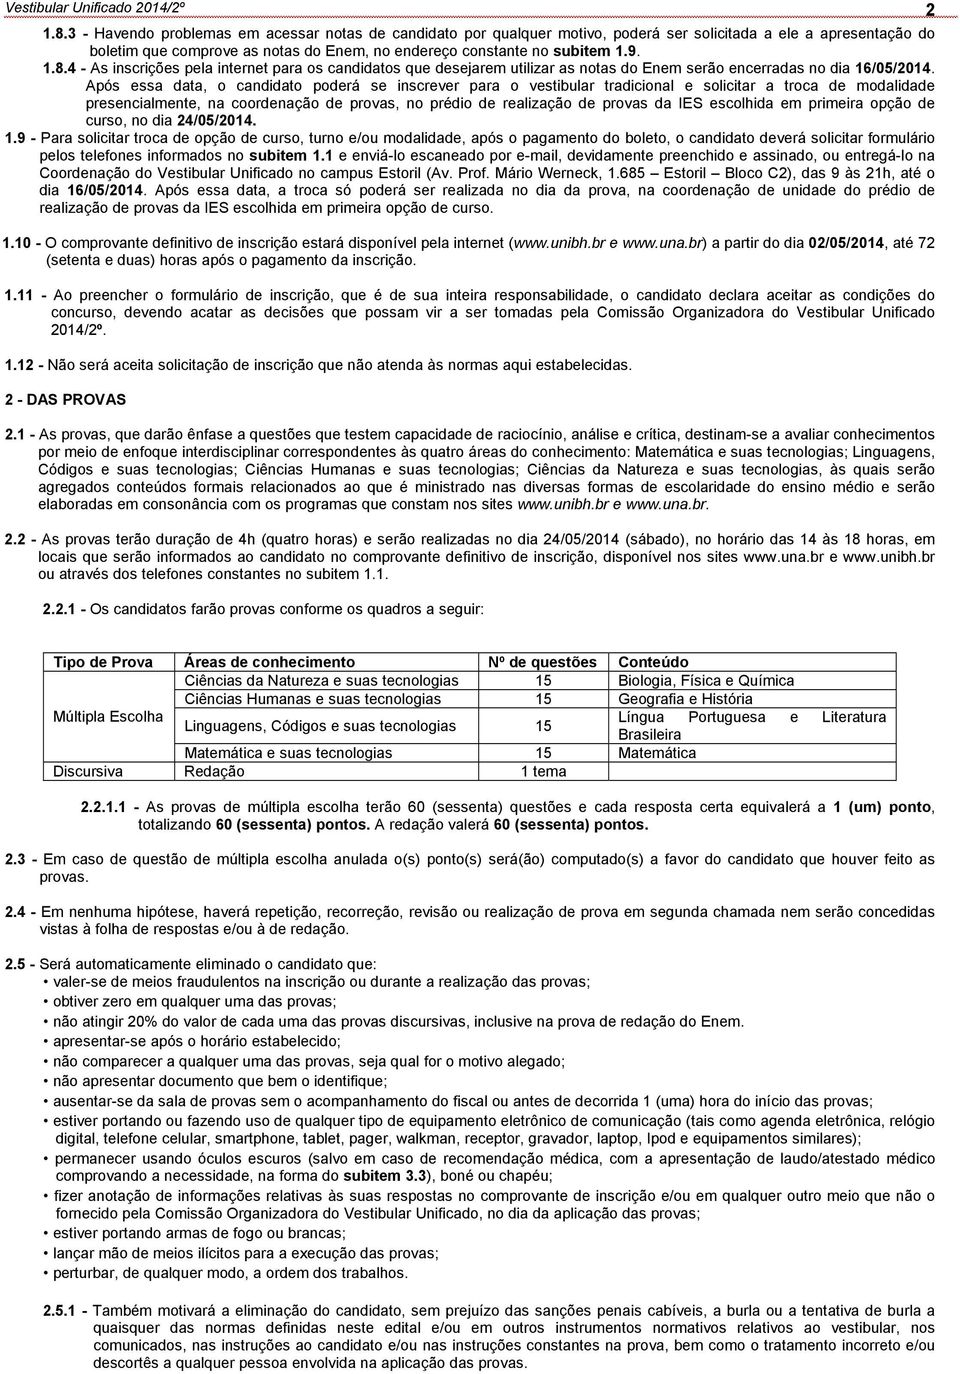 4 - As inscrições pela internet para os candidatos que desejarem utilizar as notas do Enem serão encerradas no dia 16/05/2014.